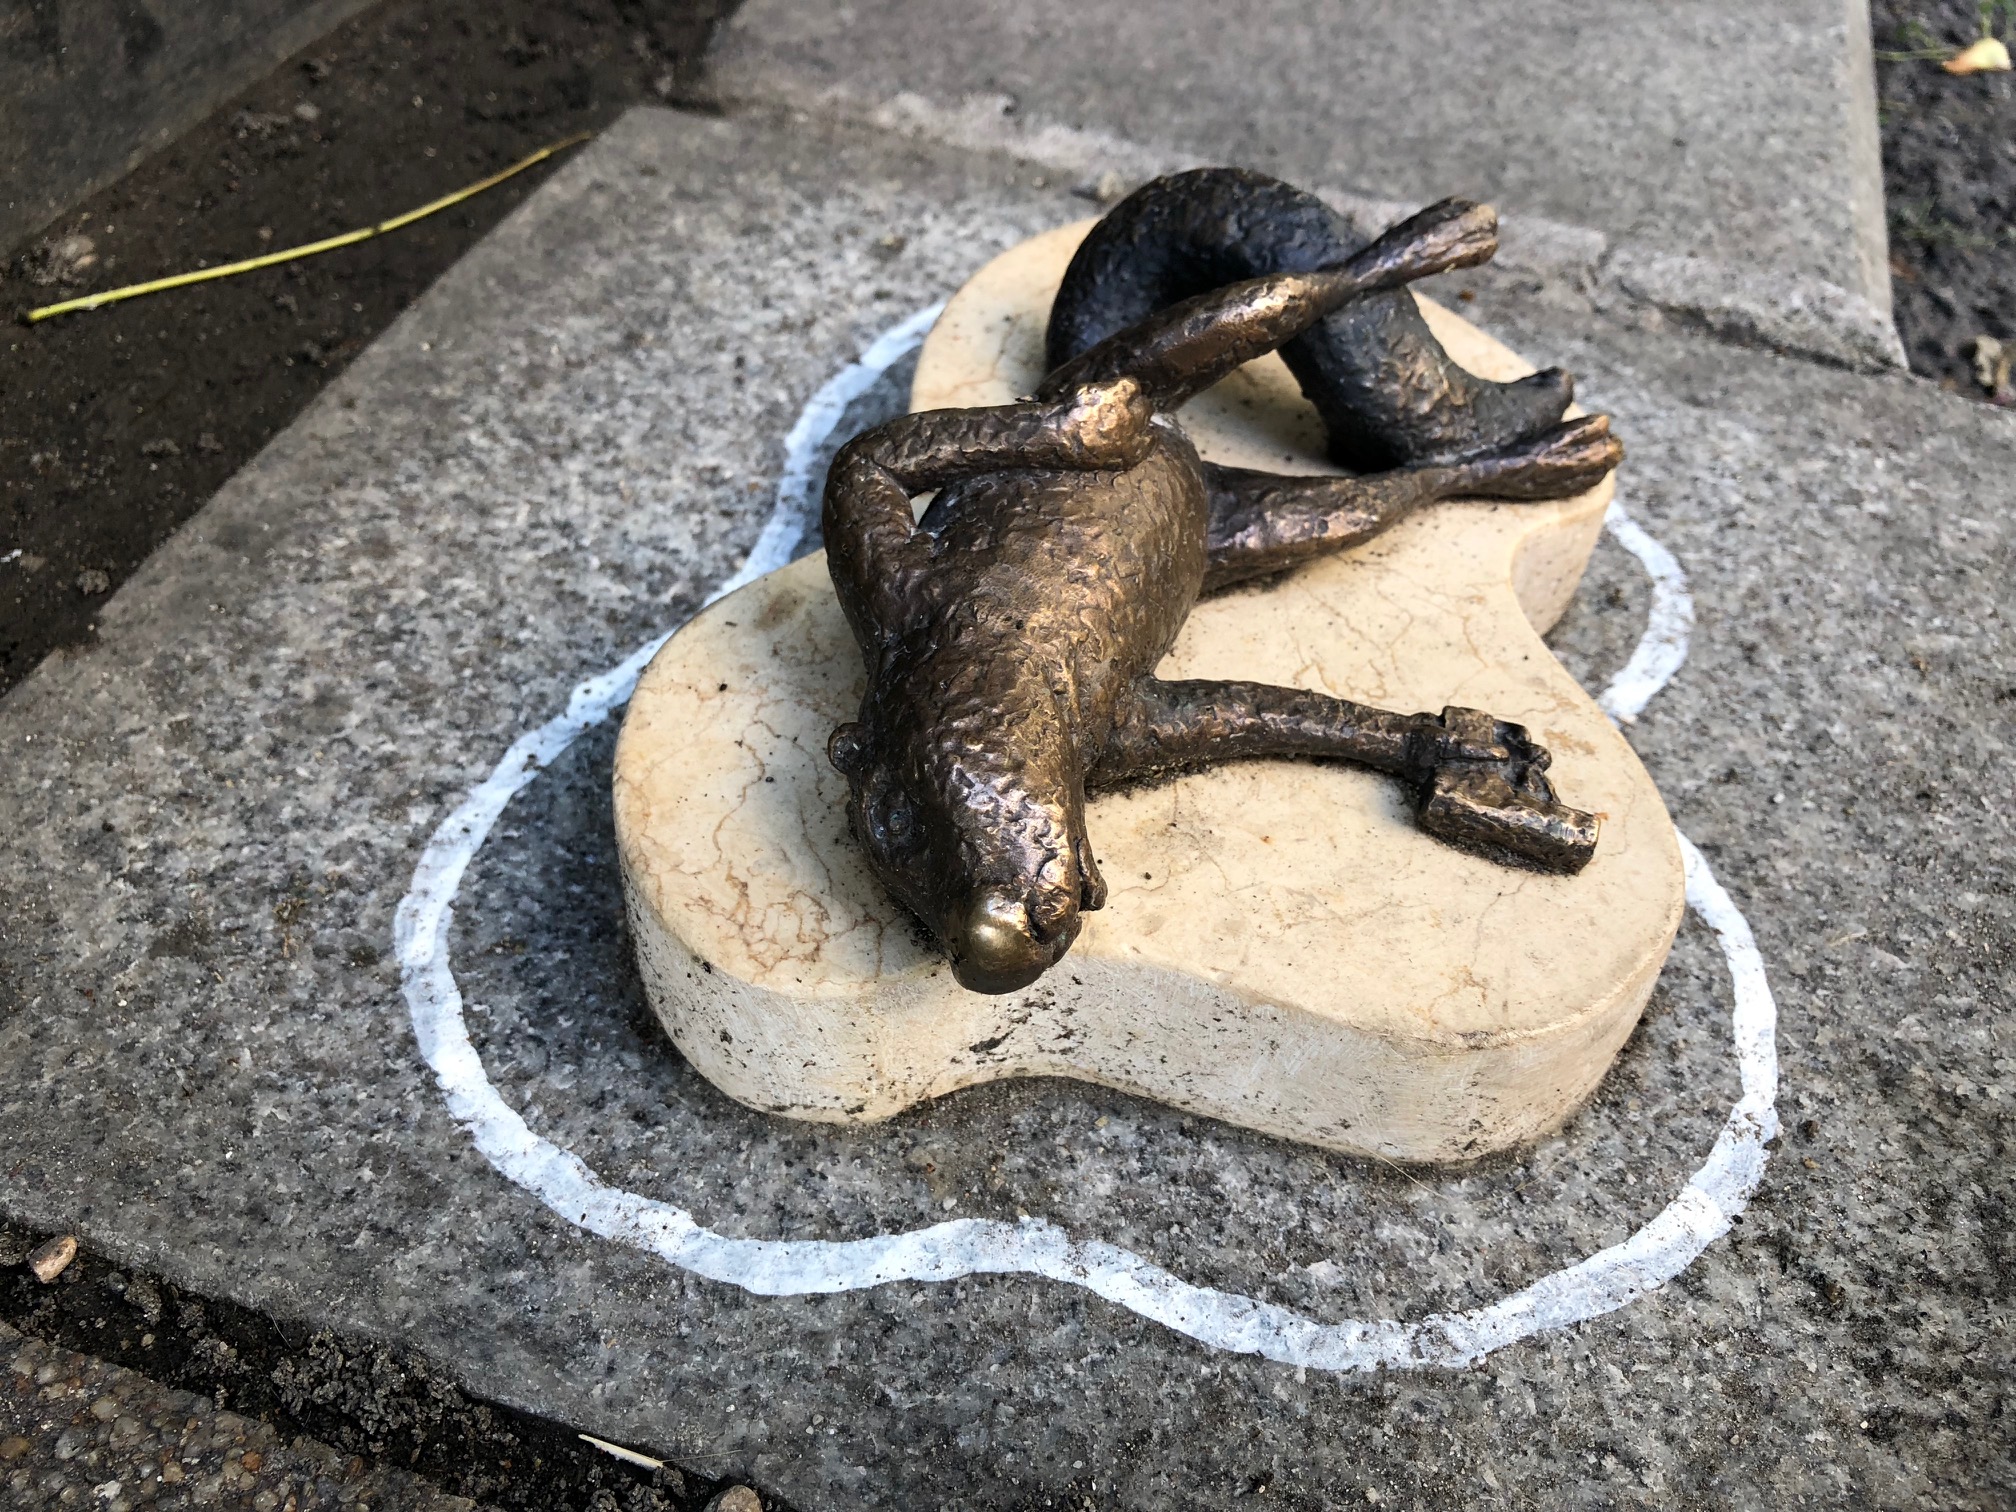 Újabb bronz gerillaszobor jelent meg Budapesten, egy bűntény áldozatául esett rágcsáló fekszik Columbo szobra mellett